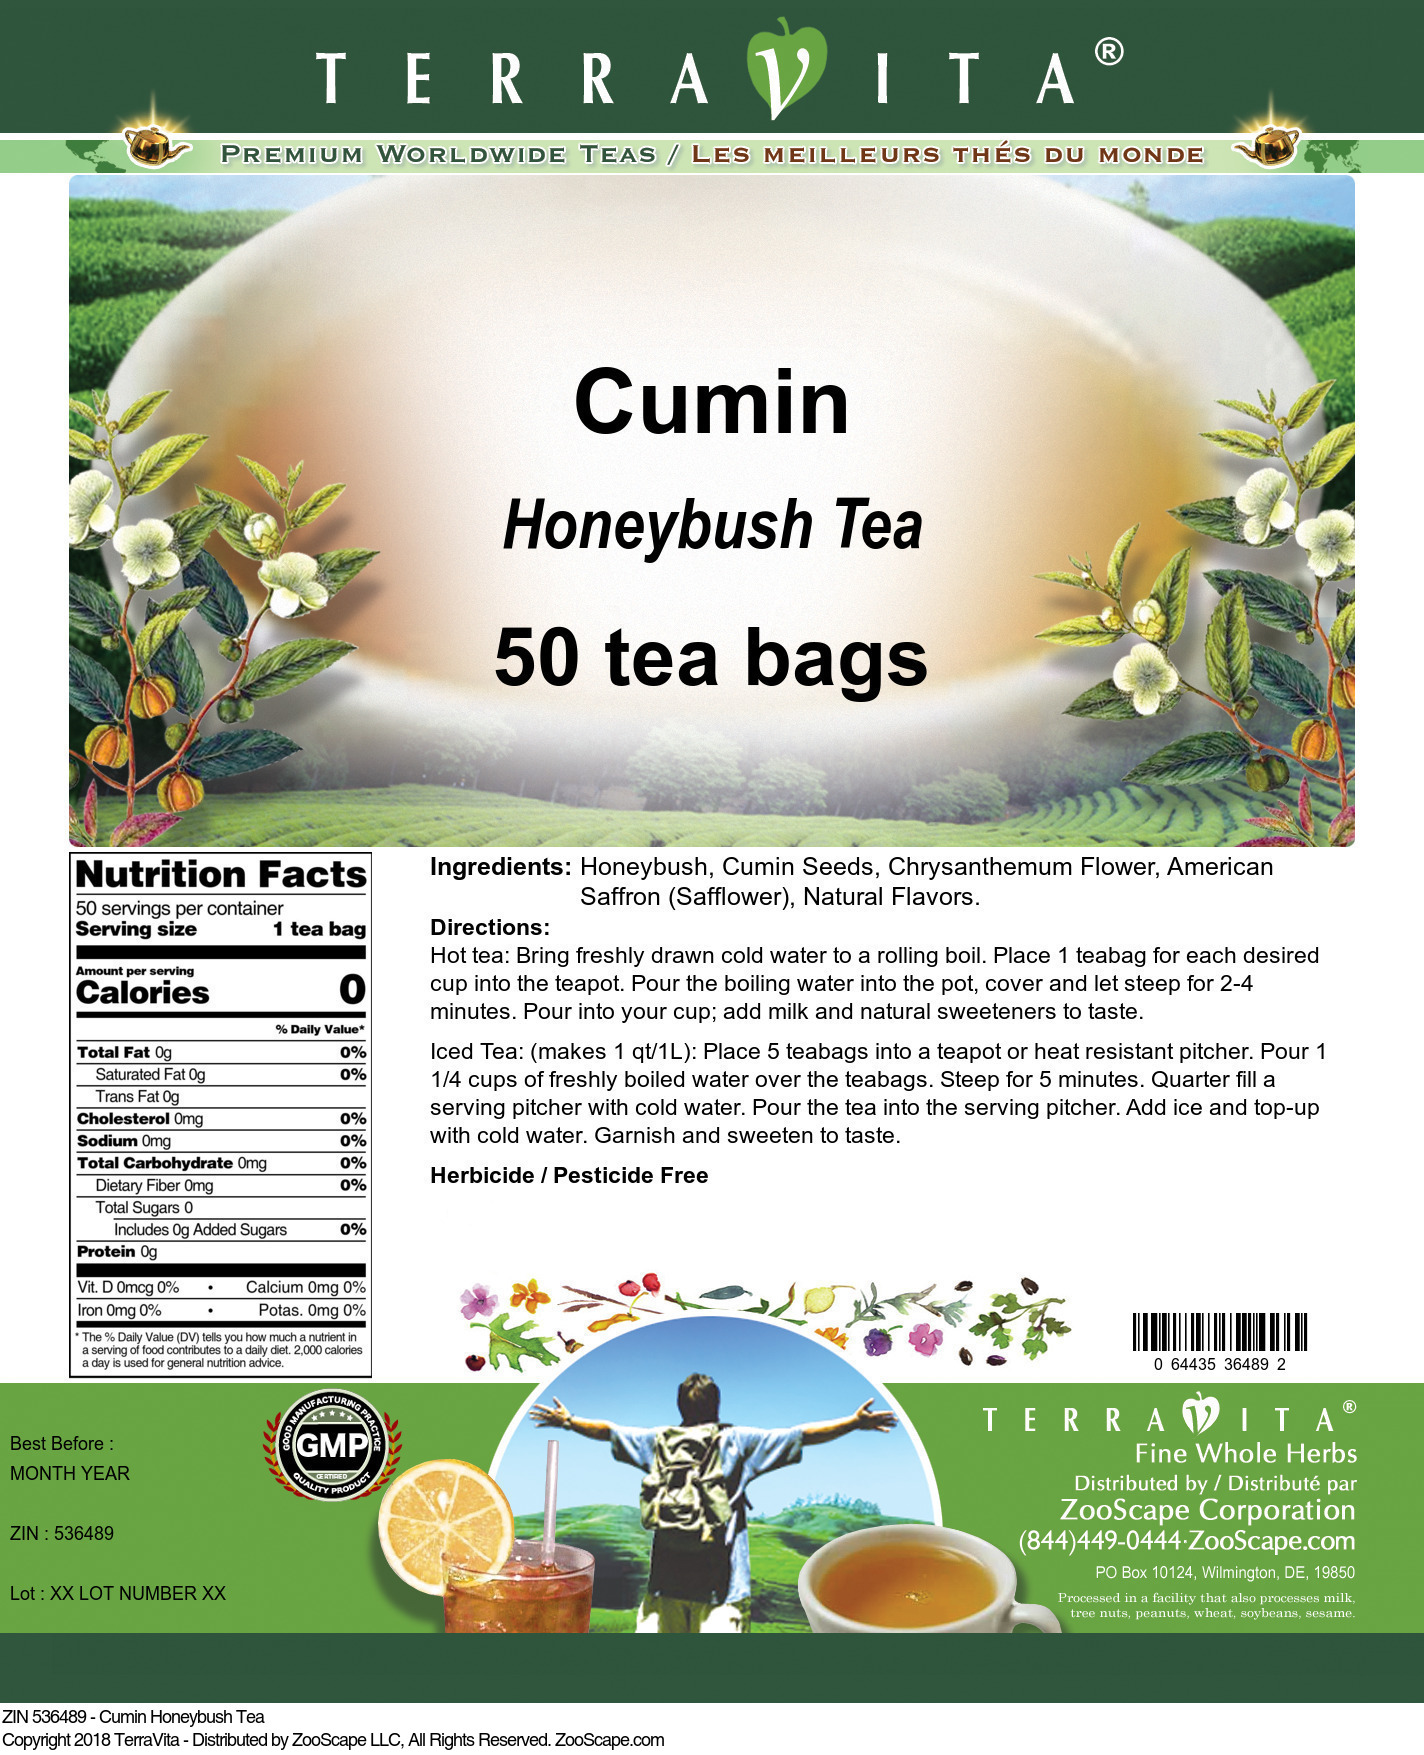 Cumin Honeybush Tea - Label